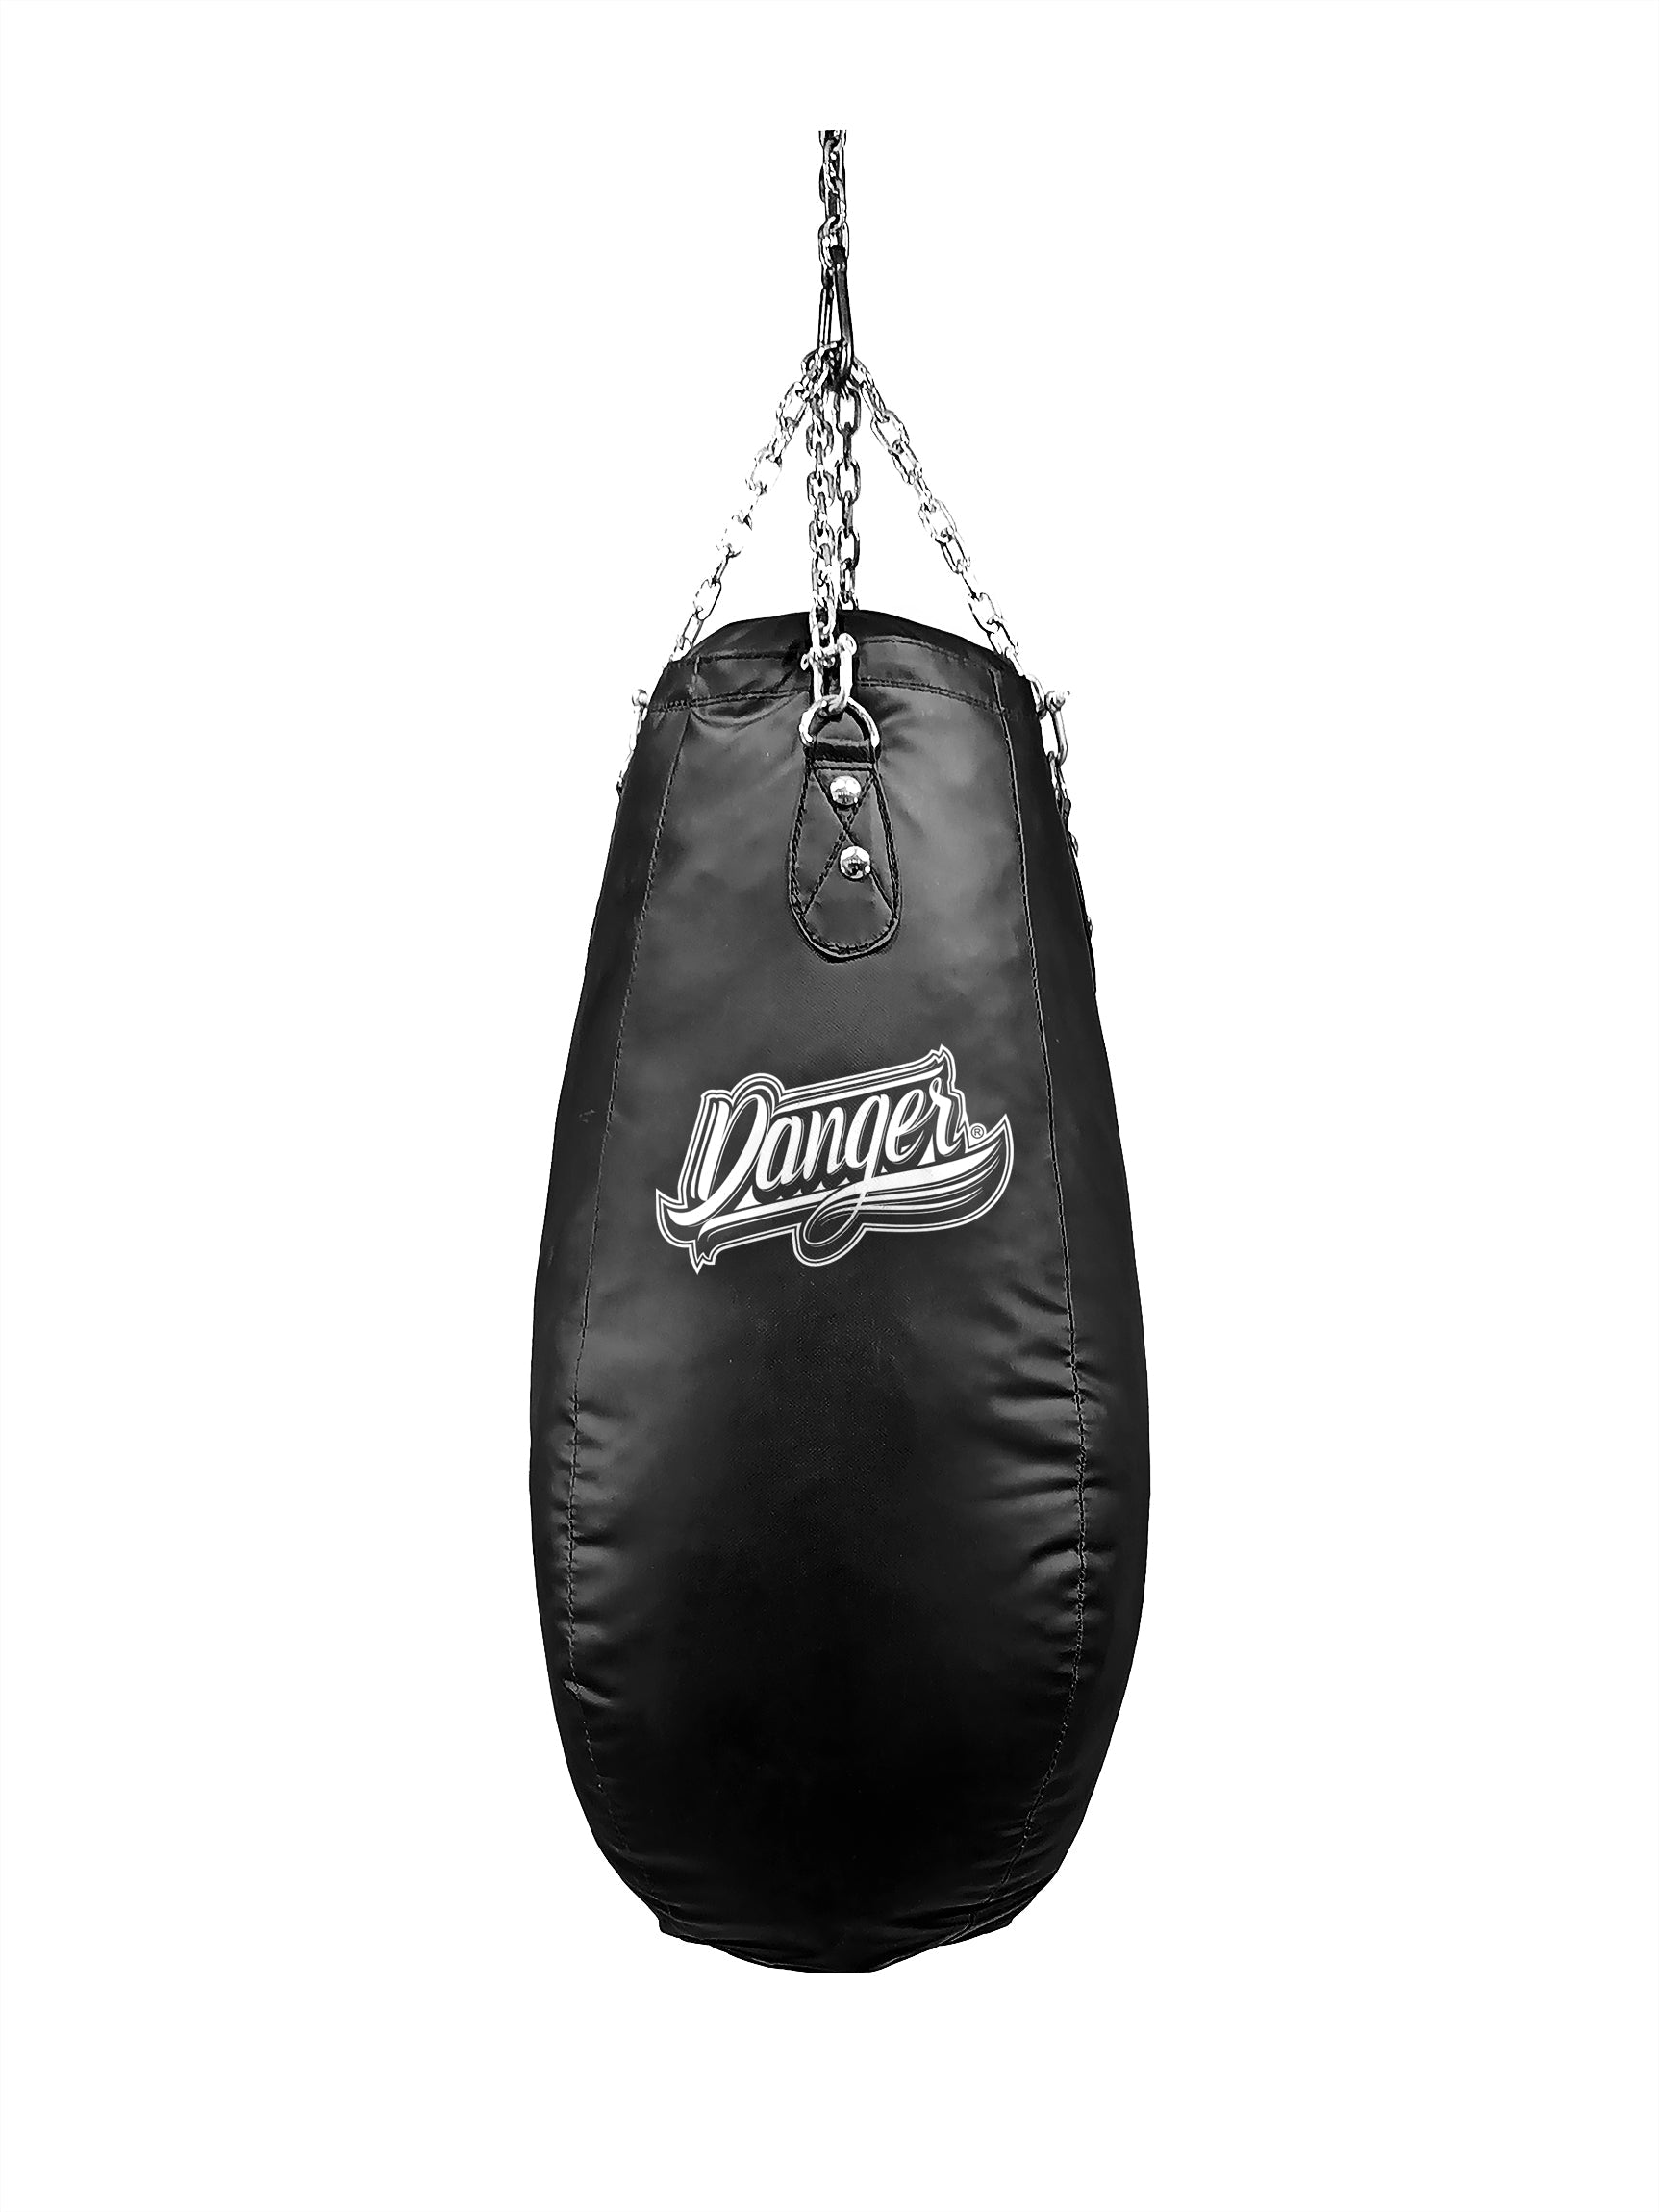 Punching bag 25kg 120x35 Ring - FighterShop